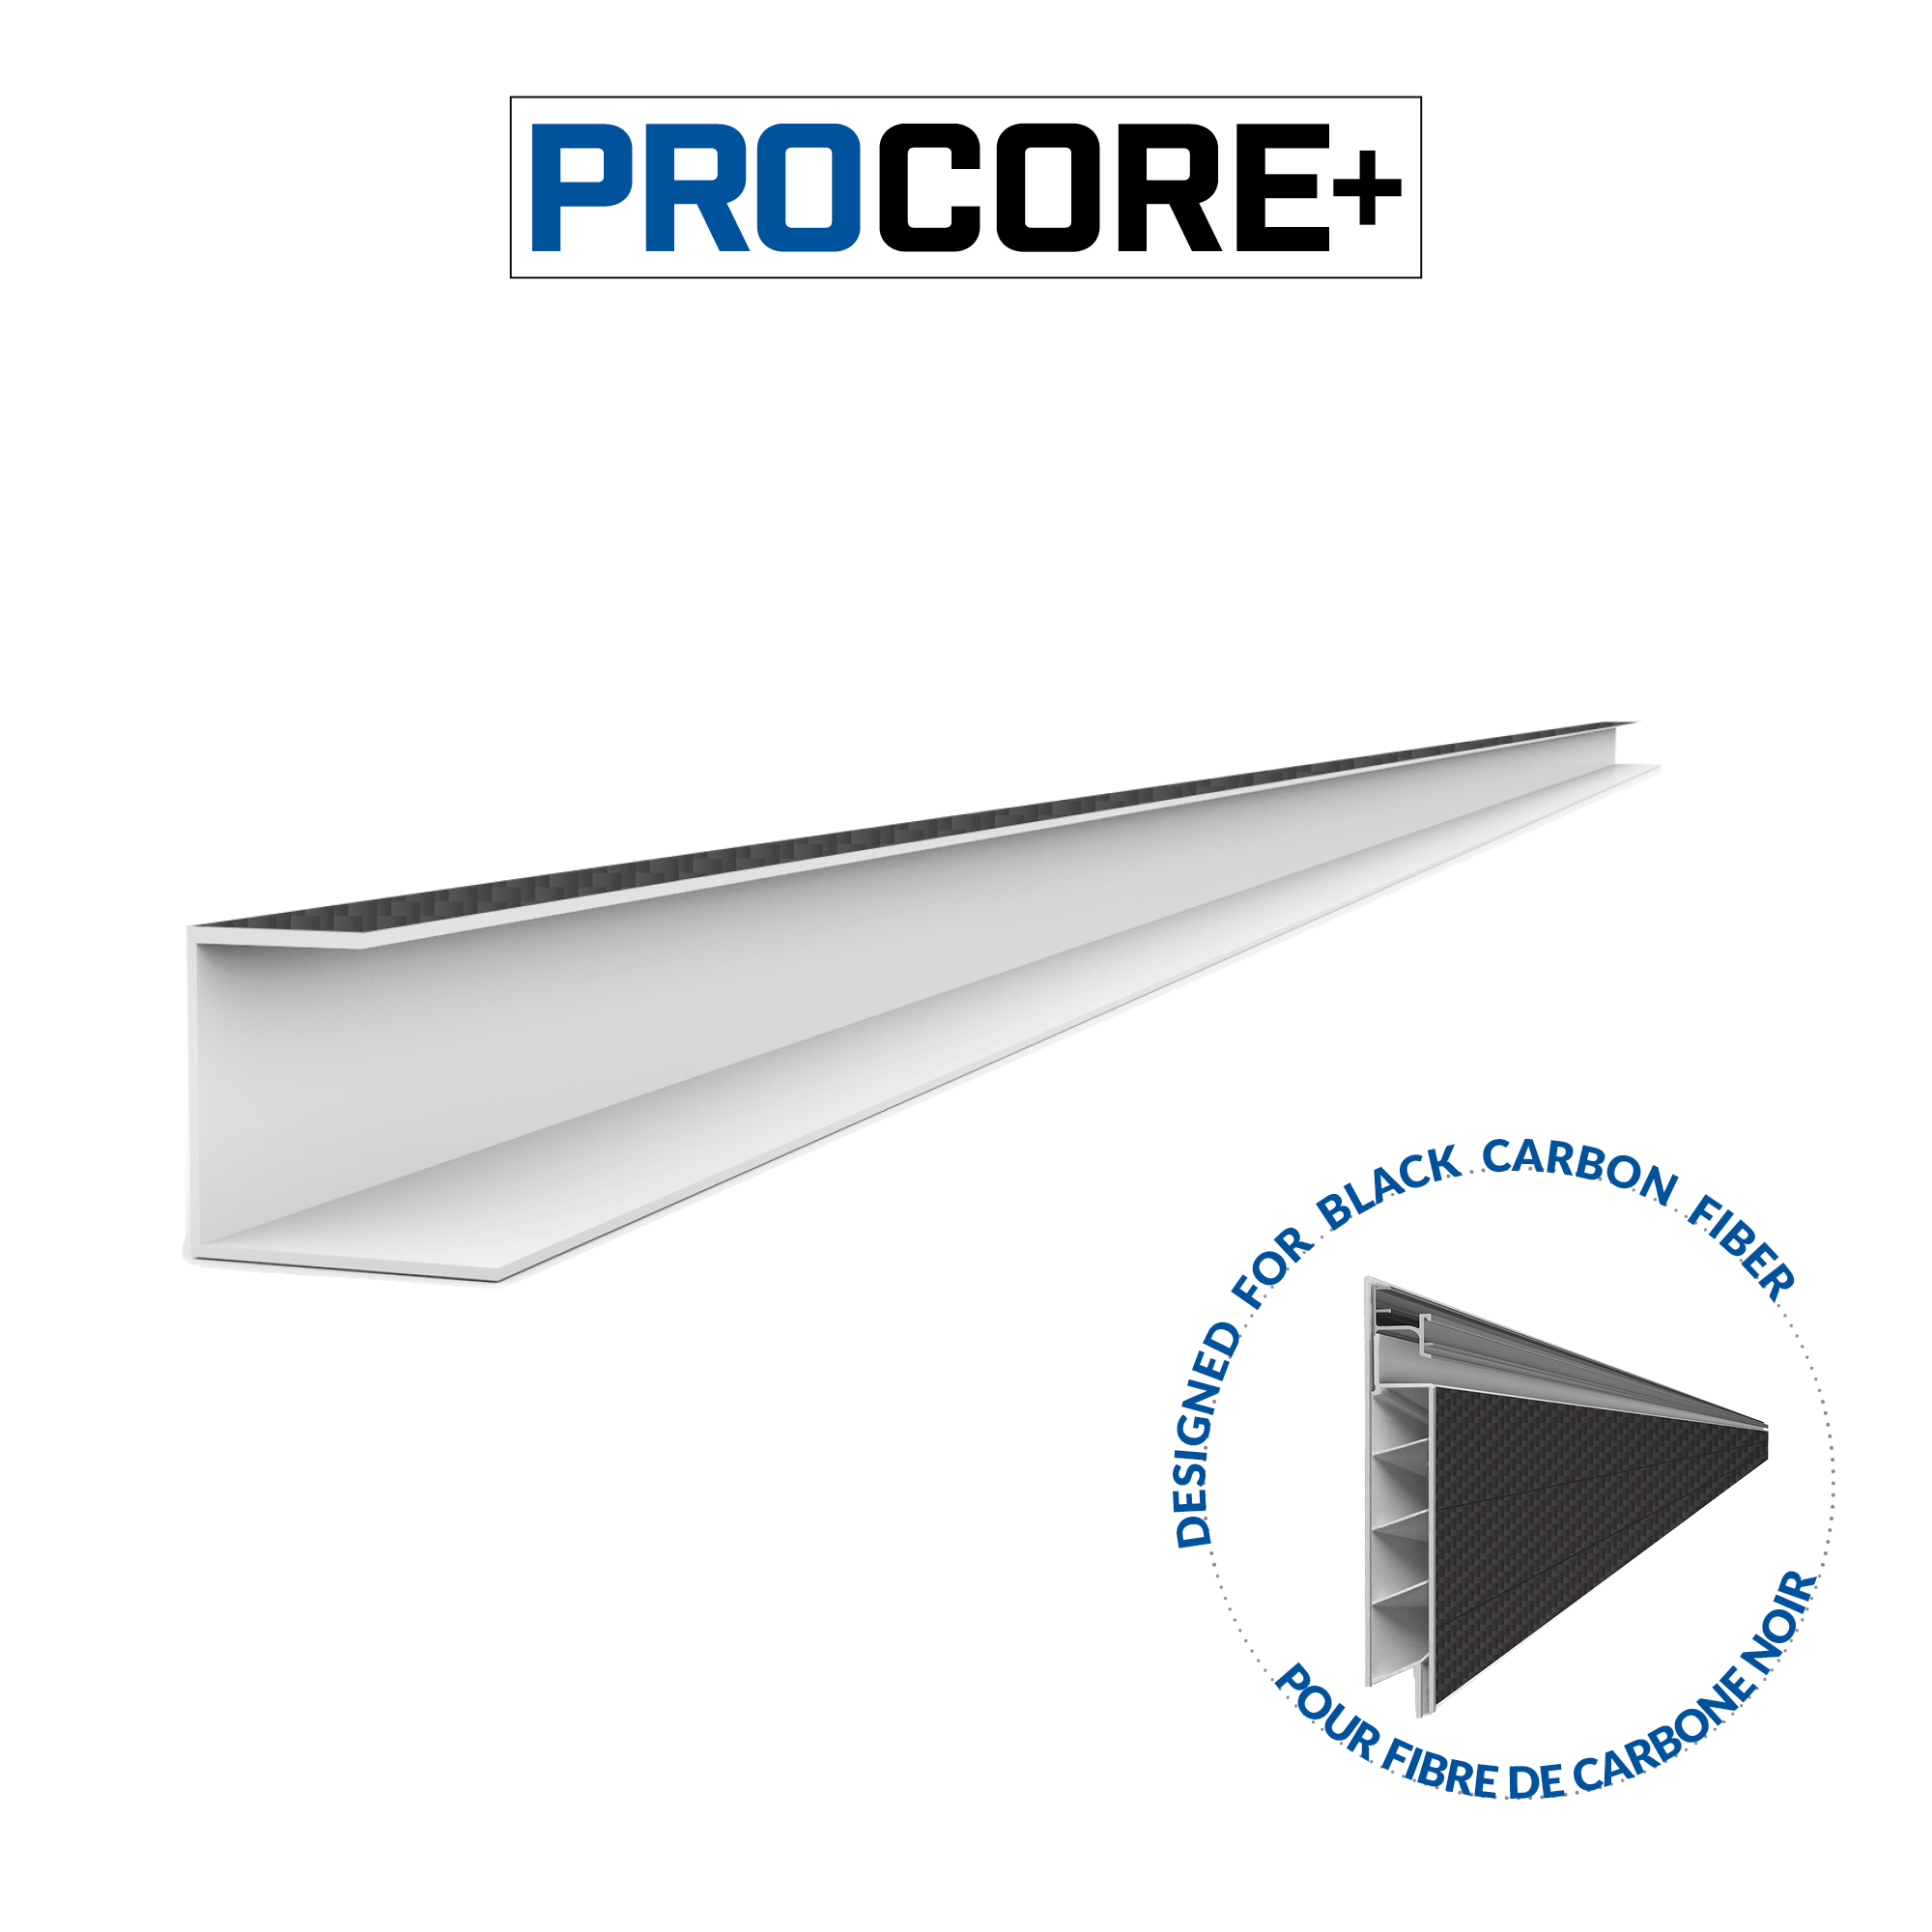 8 ft. PROCORE+ Black carbon fiber PVC Side Trim Pack, Proslat Canada